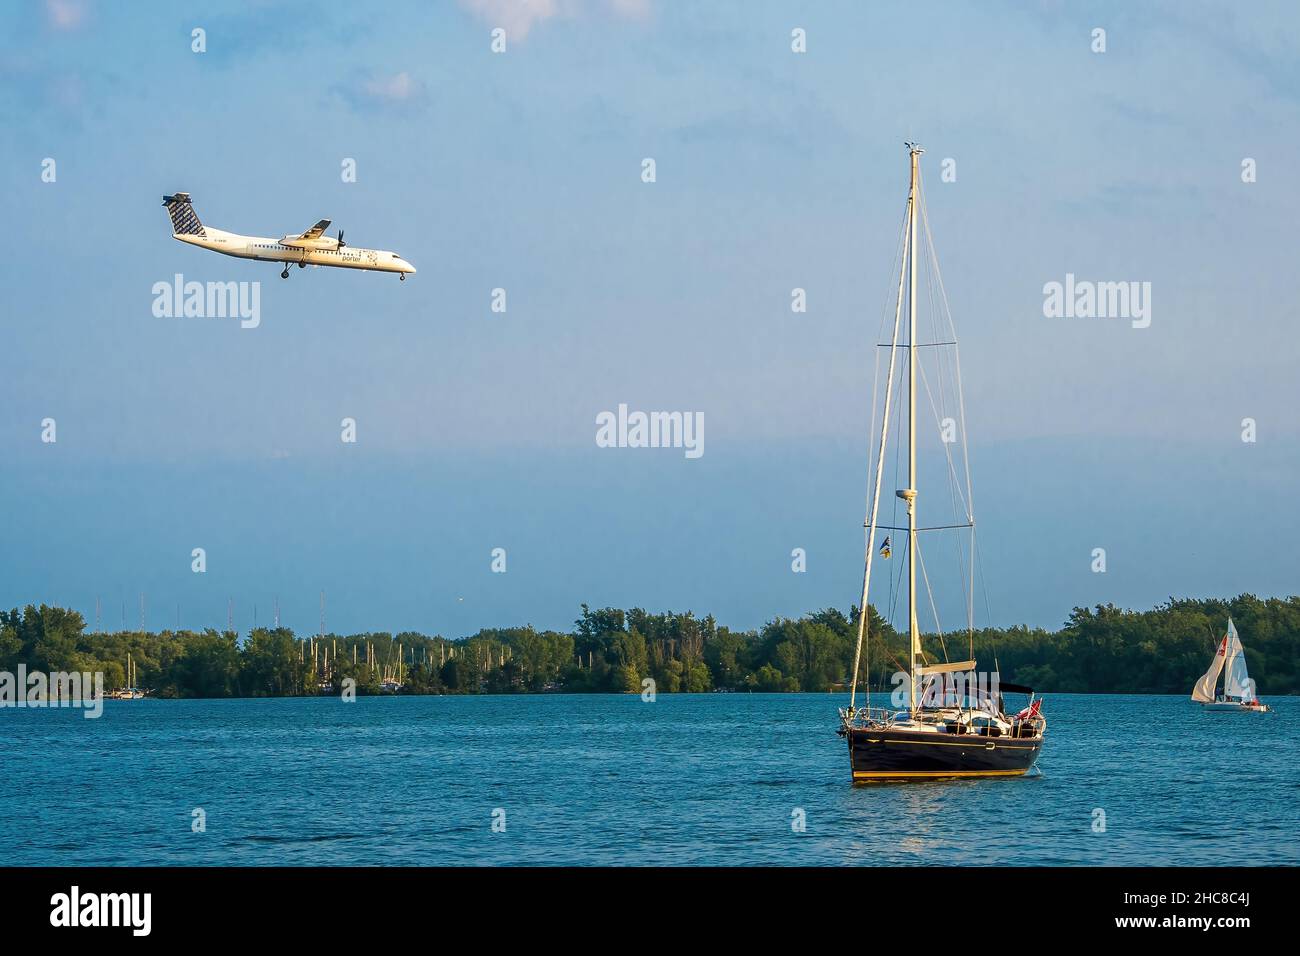 Toronto, Canada - 1 luglio 2015: Atterraggio dell'aereo dell'elica nell'aeroporto di Porter a Toronto durante il giorno del Canada. L'aereo sta atterrando sopra il lago. Un piccolo s Foto Stock